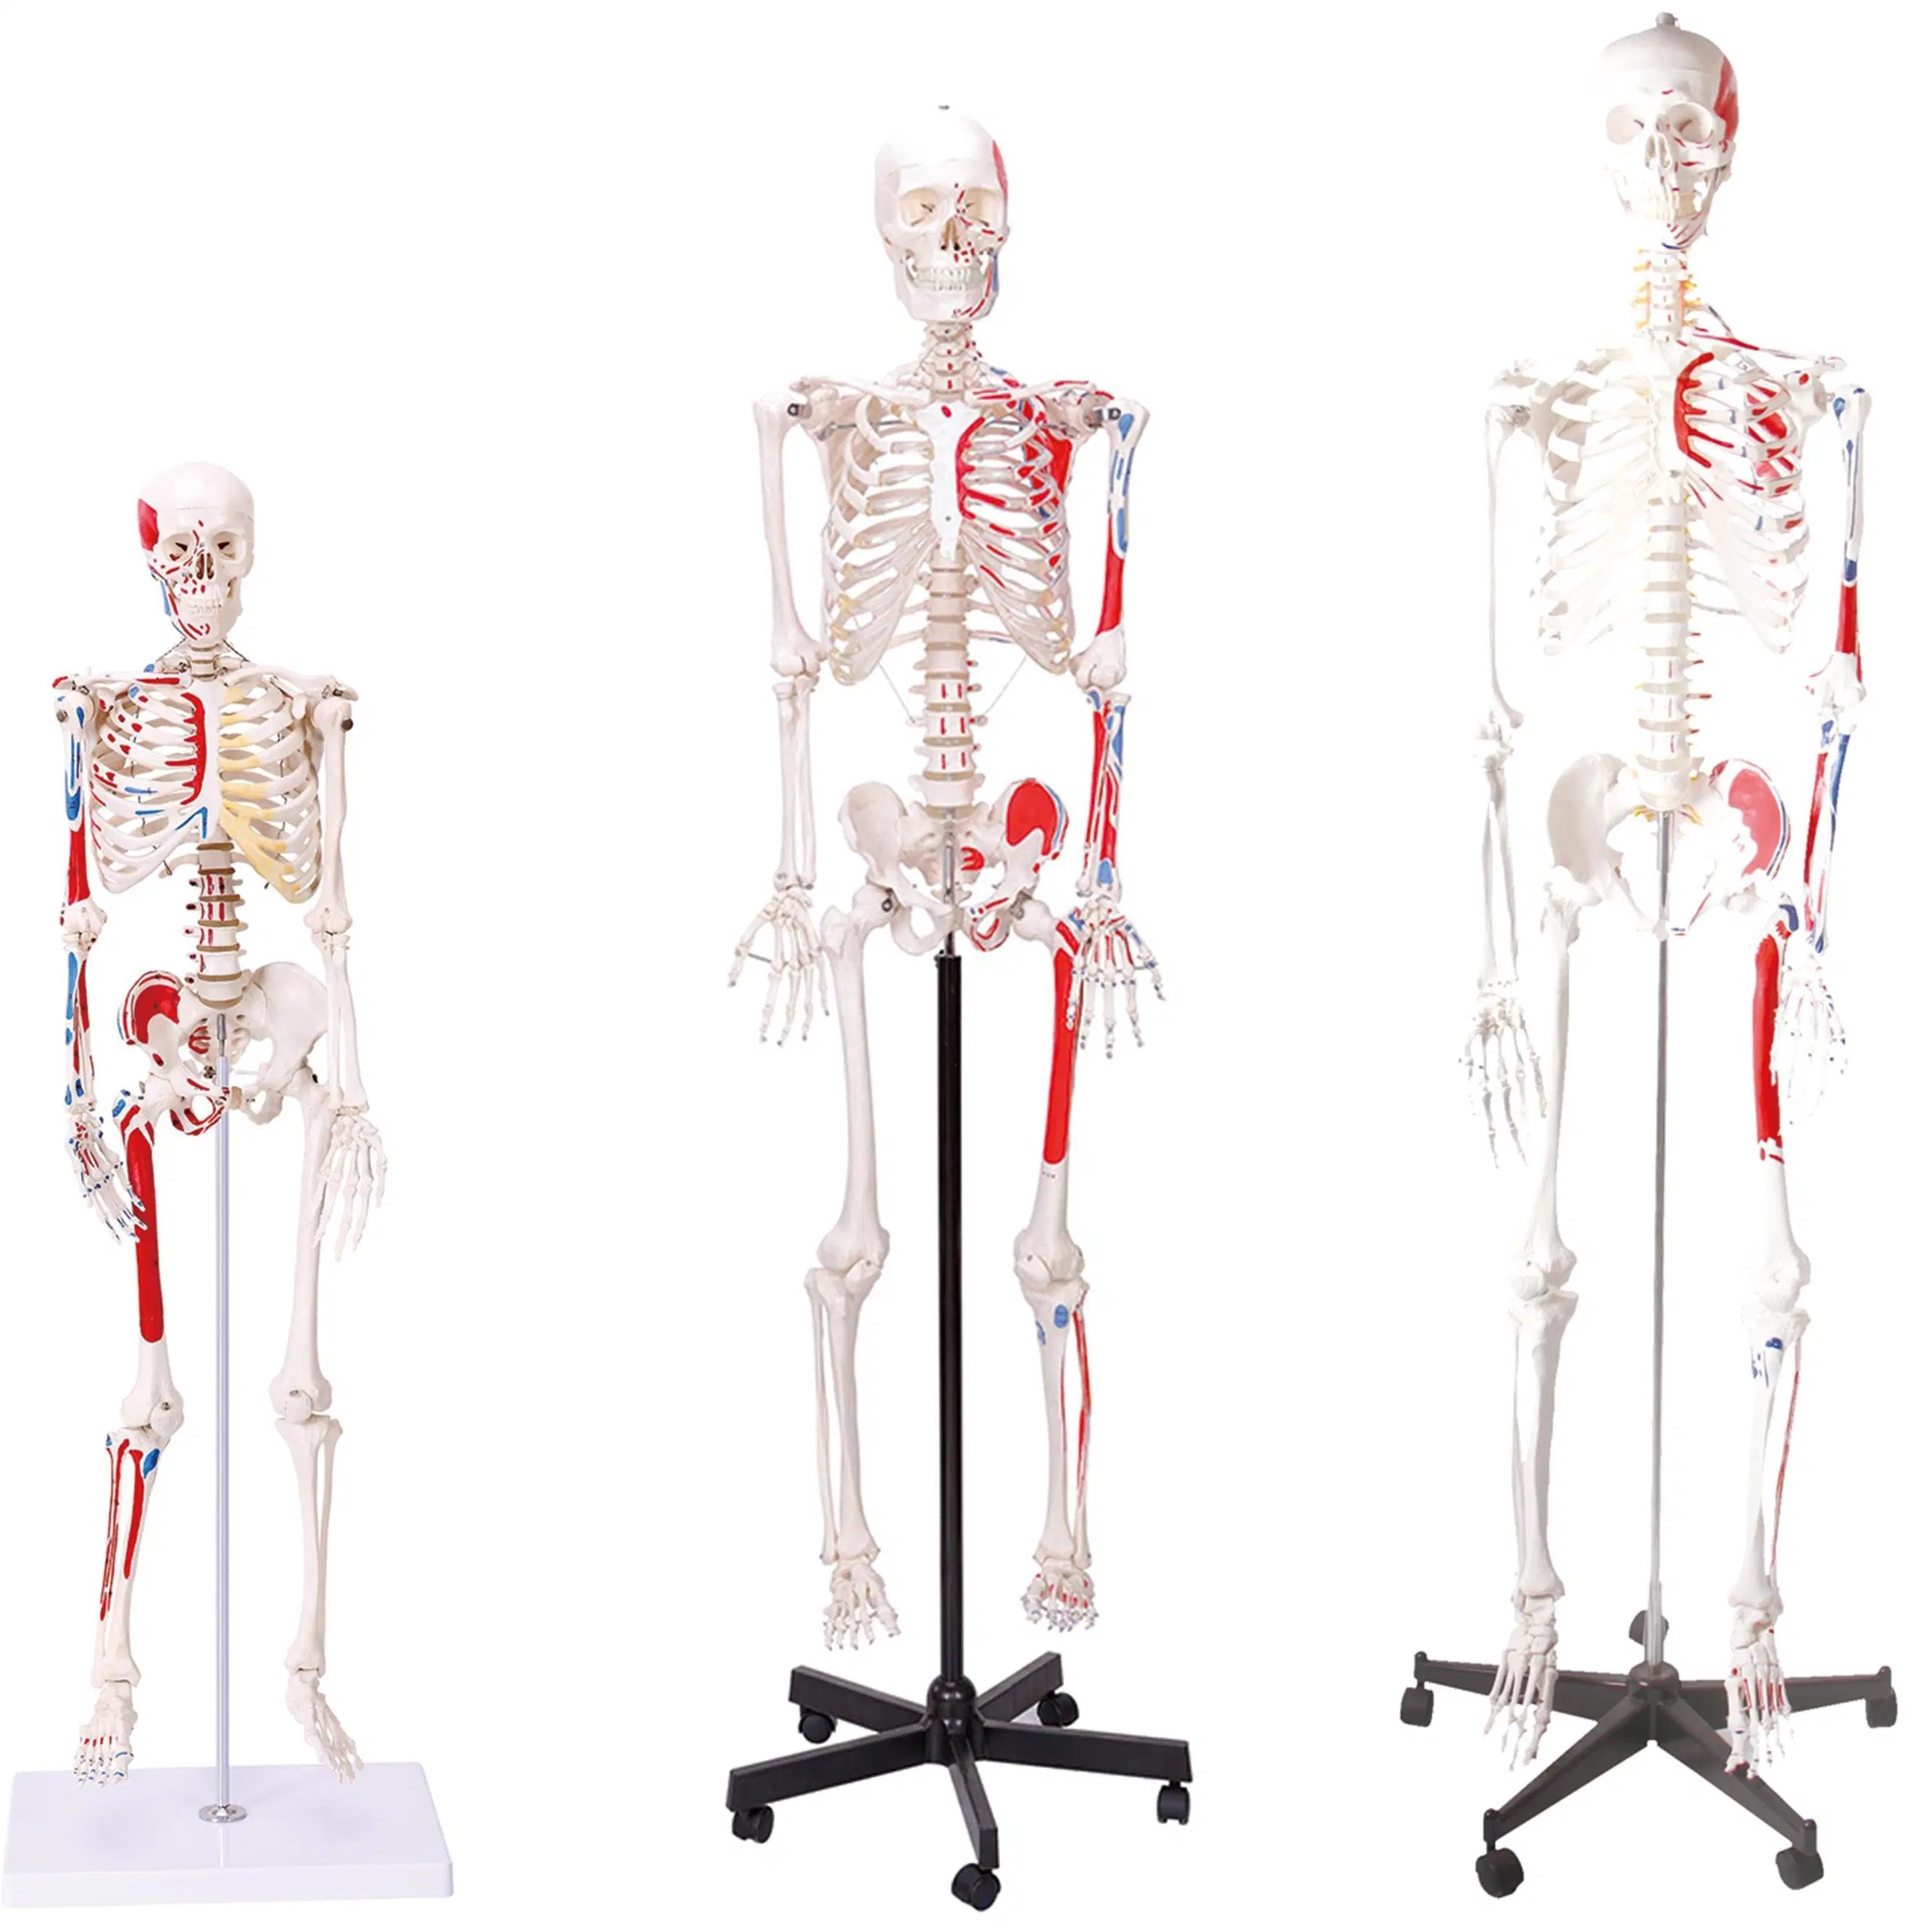 نماذج التدريس في المختبر نماذج هيكل عظمي عضلي بشرية بحجم 170 سم من PVC